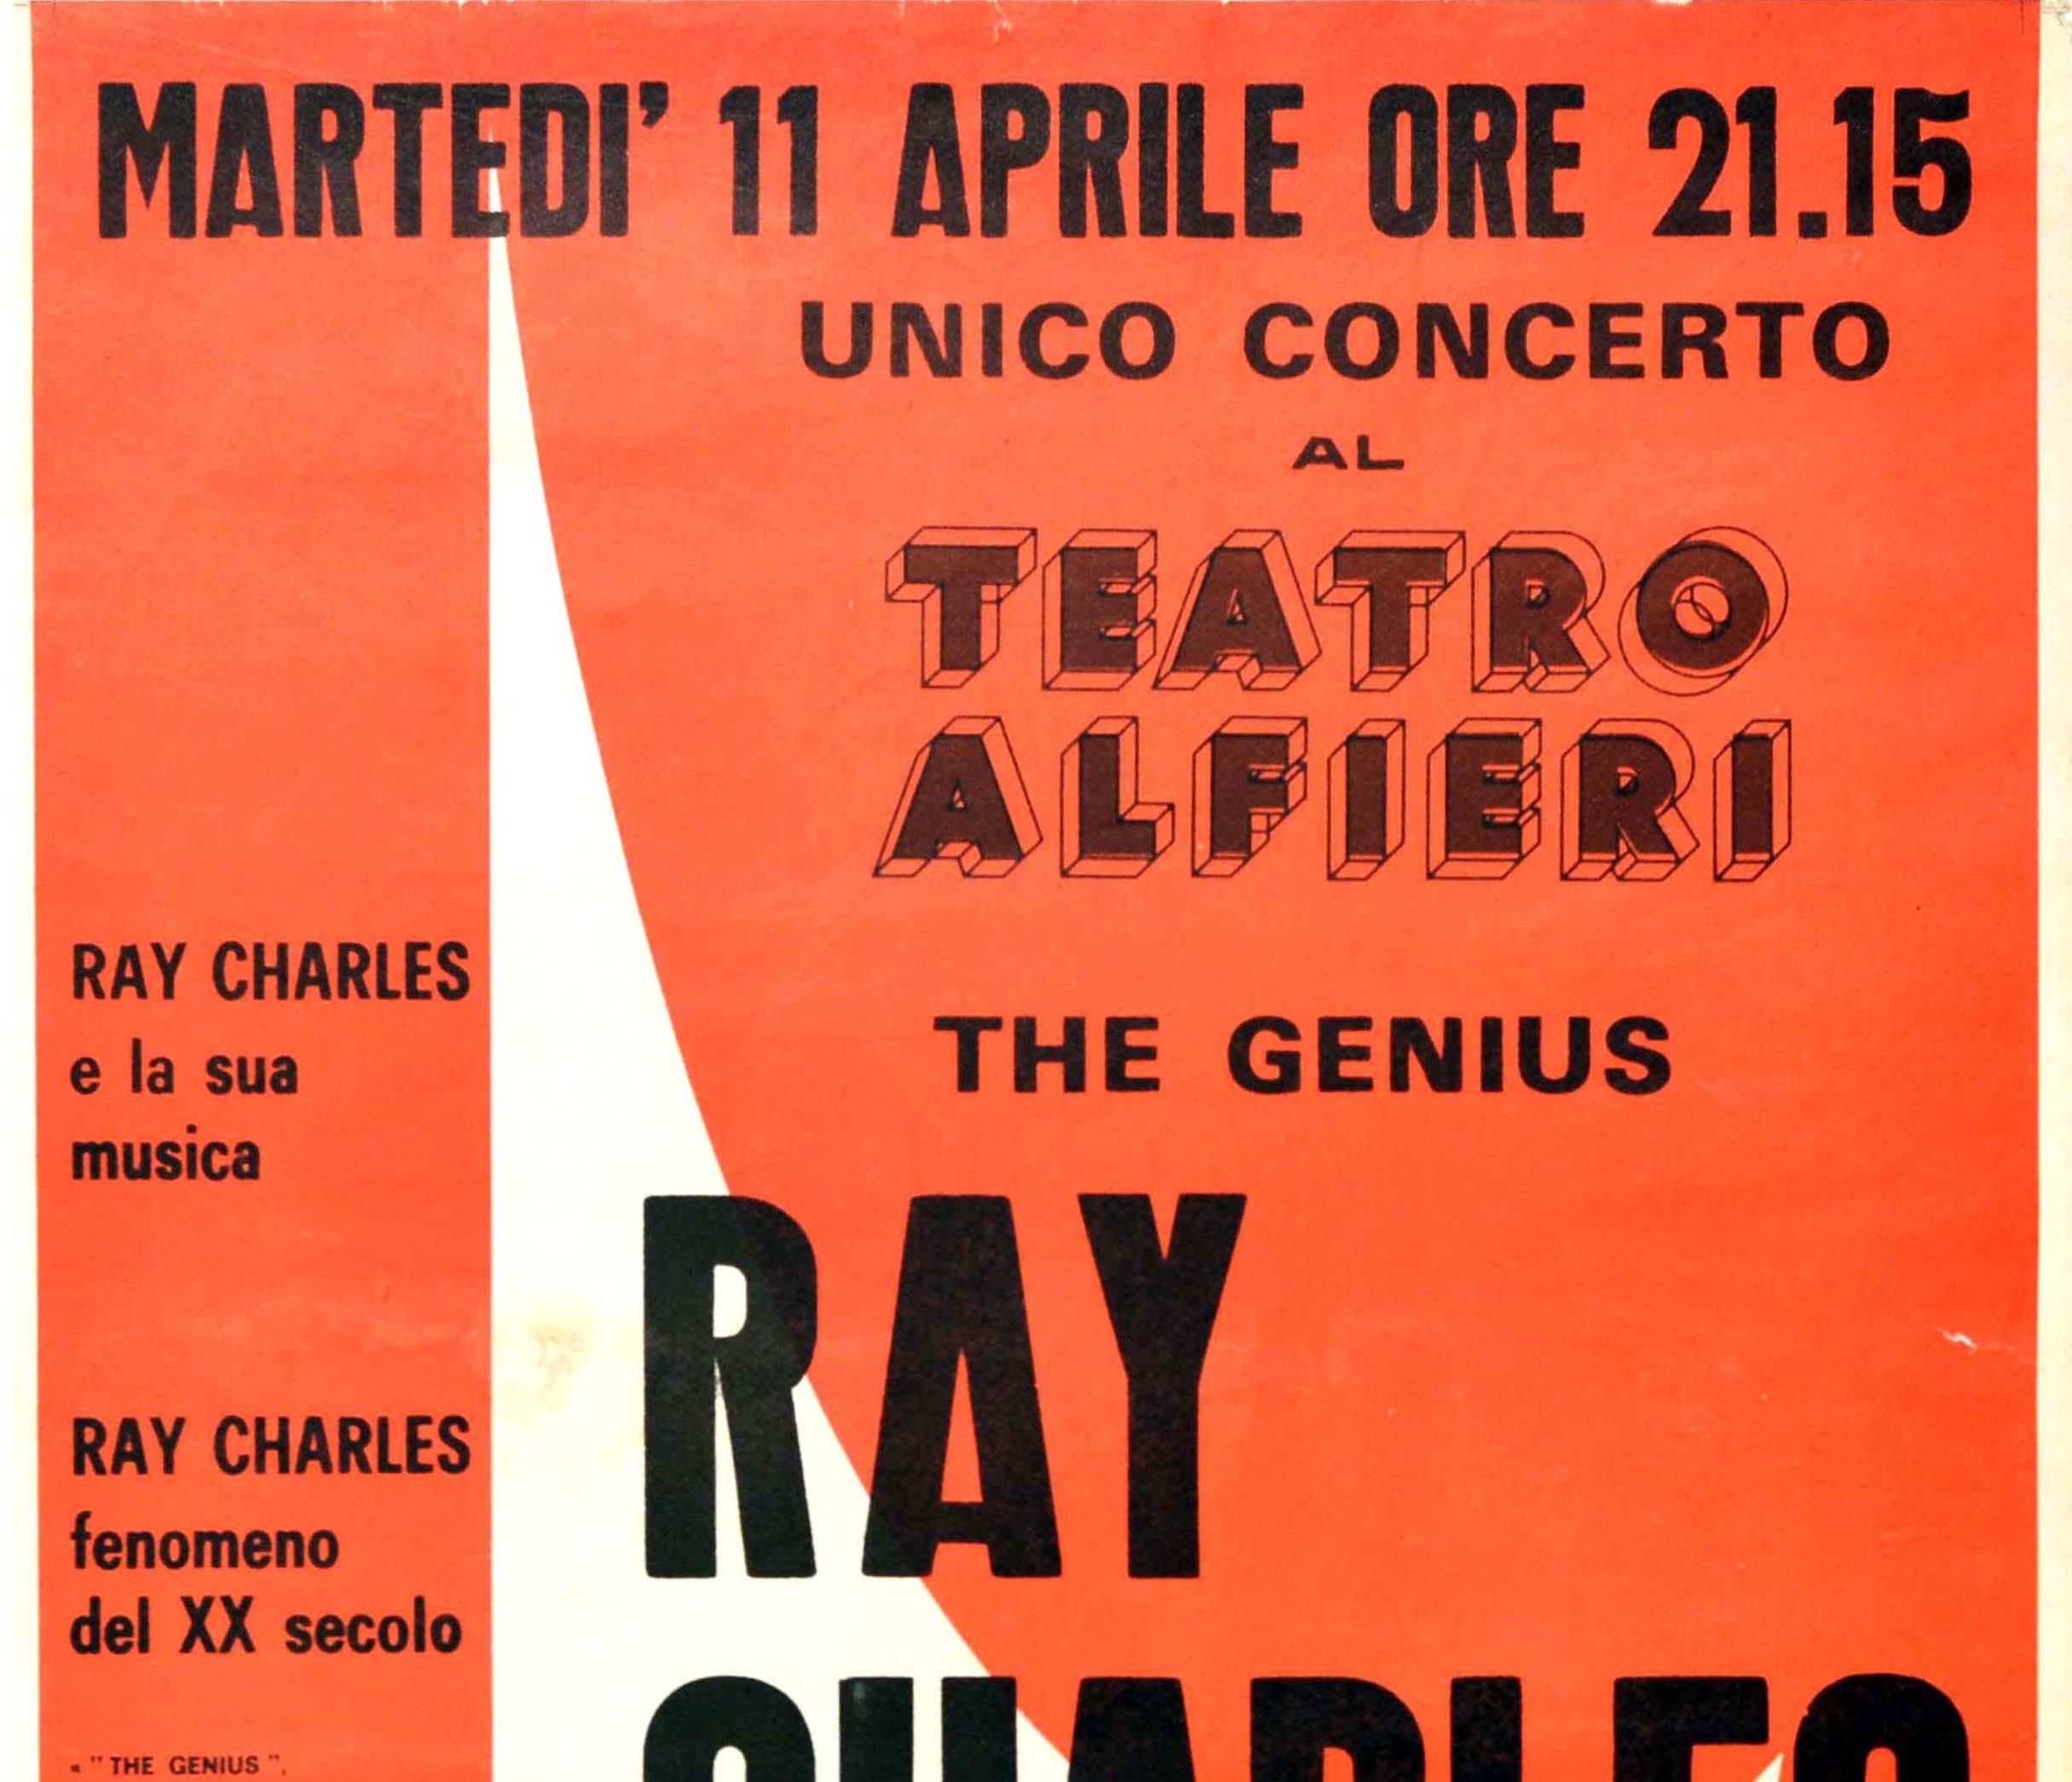 Affiche originale vintage annonçant un concert de musique du chanteur et musicien américain Ray Charles (Ray Charles Robinson ; 1930-2004) The Genius présenté par Francesco Sanavio au Teatro Alfieri à Turin en Italie le mardi 11 avril 1967. Le